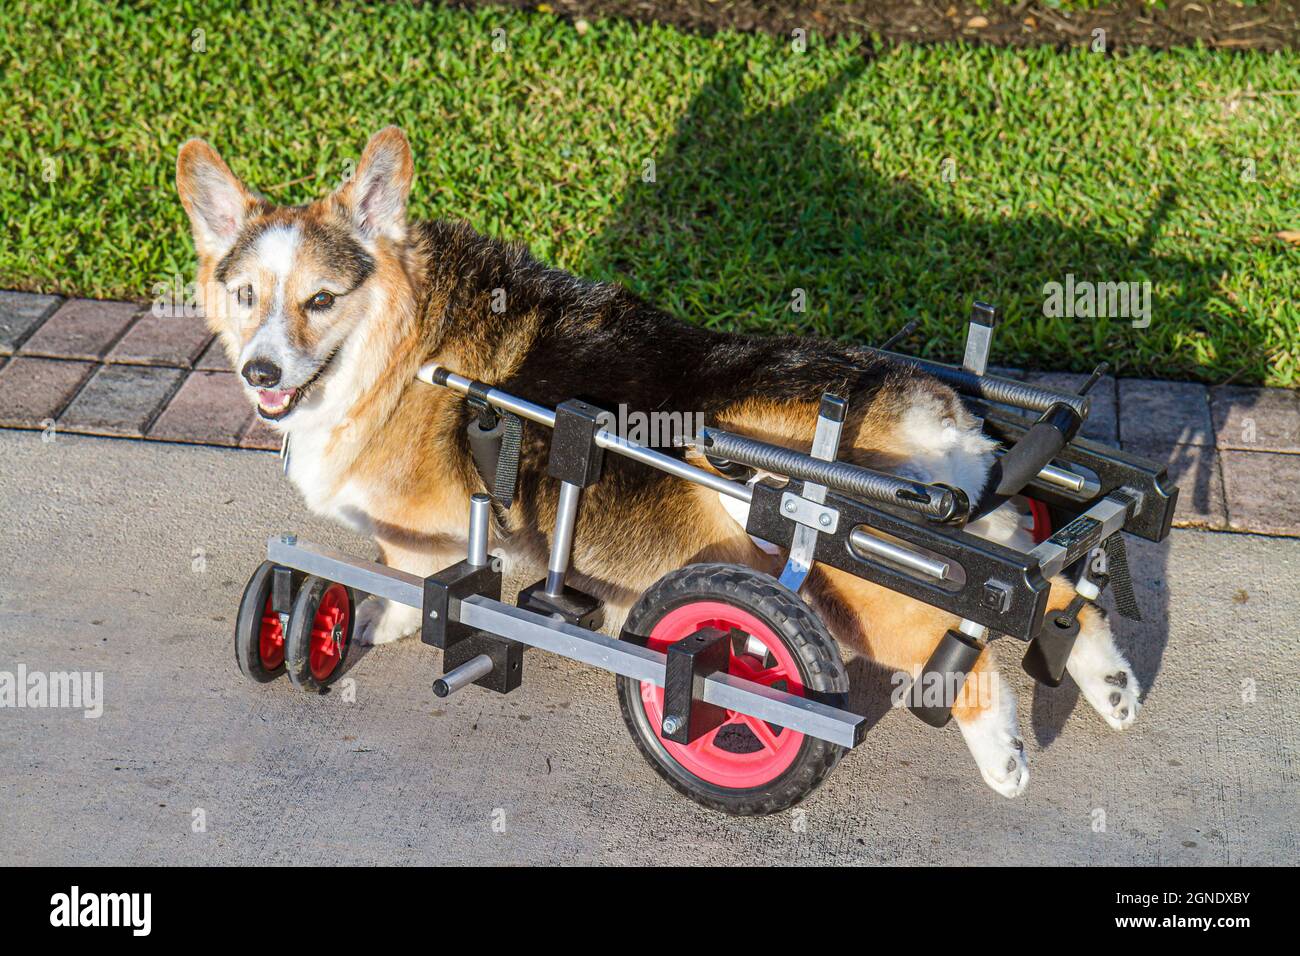 Miami Beach Florida, perro mascota corgi canino mielopatía crónica, degenerativa radiculomielopatía parálisis discapacitada necesidades especiales K 9 Carro Foto de stock